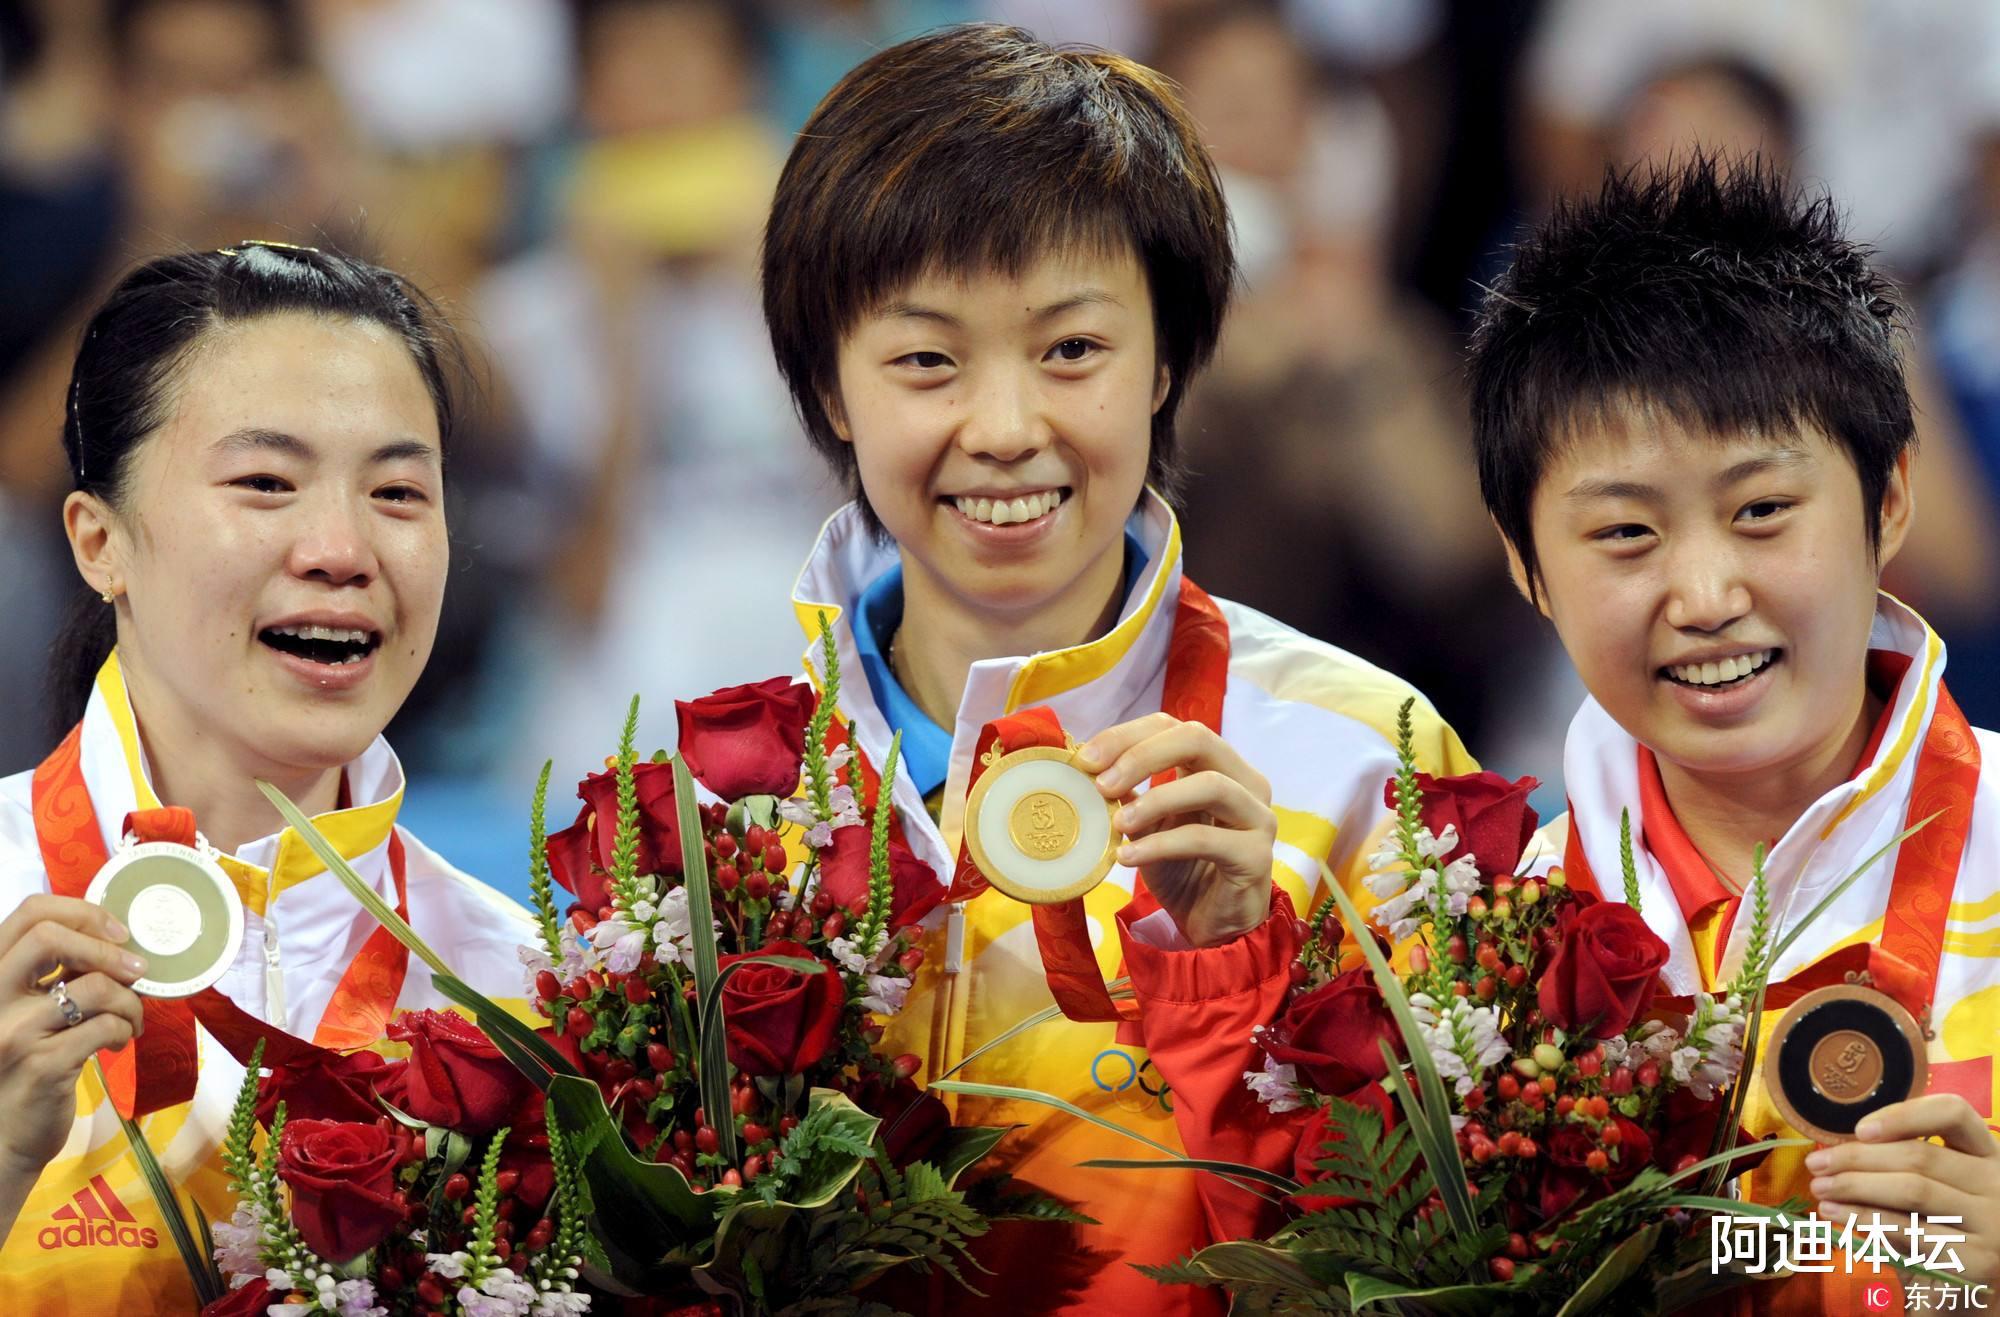 张怡宁生涯只获得一枚银牌，当时那枚金牌被谁拿走了？(2)